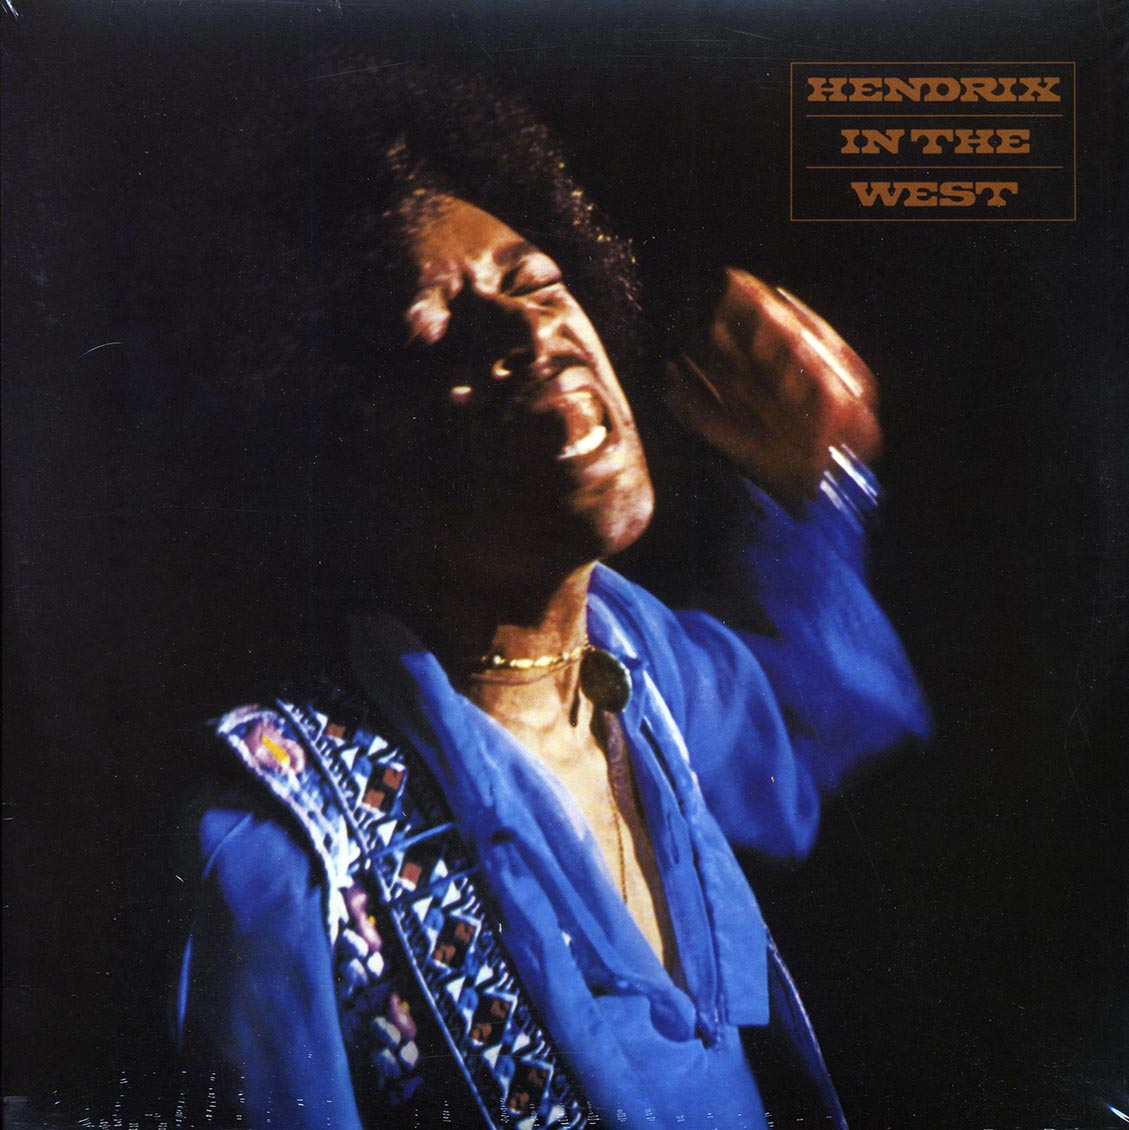 Jimi Hendrix - Hendrix In The West (2xLP) (180g) (remastered) - Vinyl LP